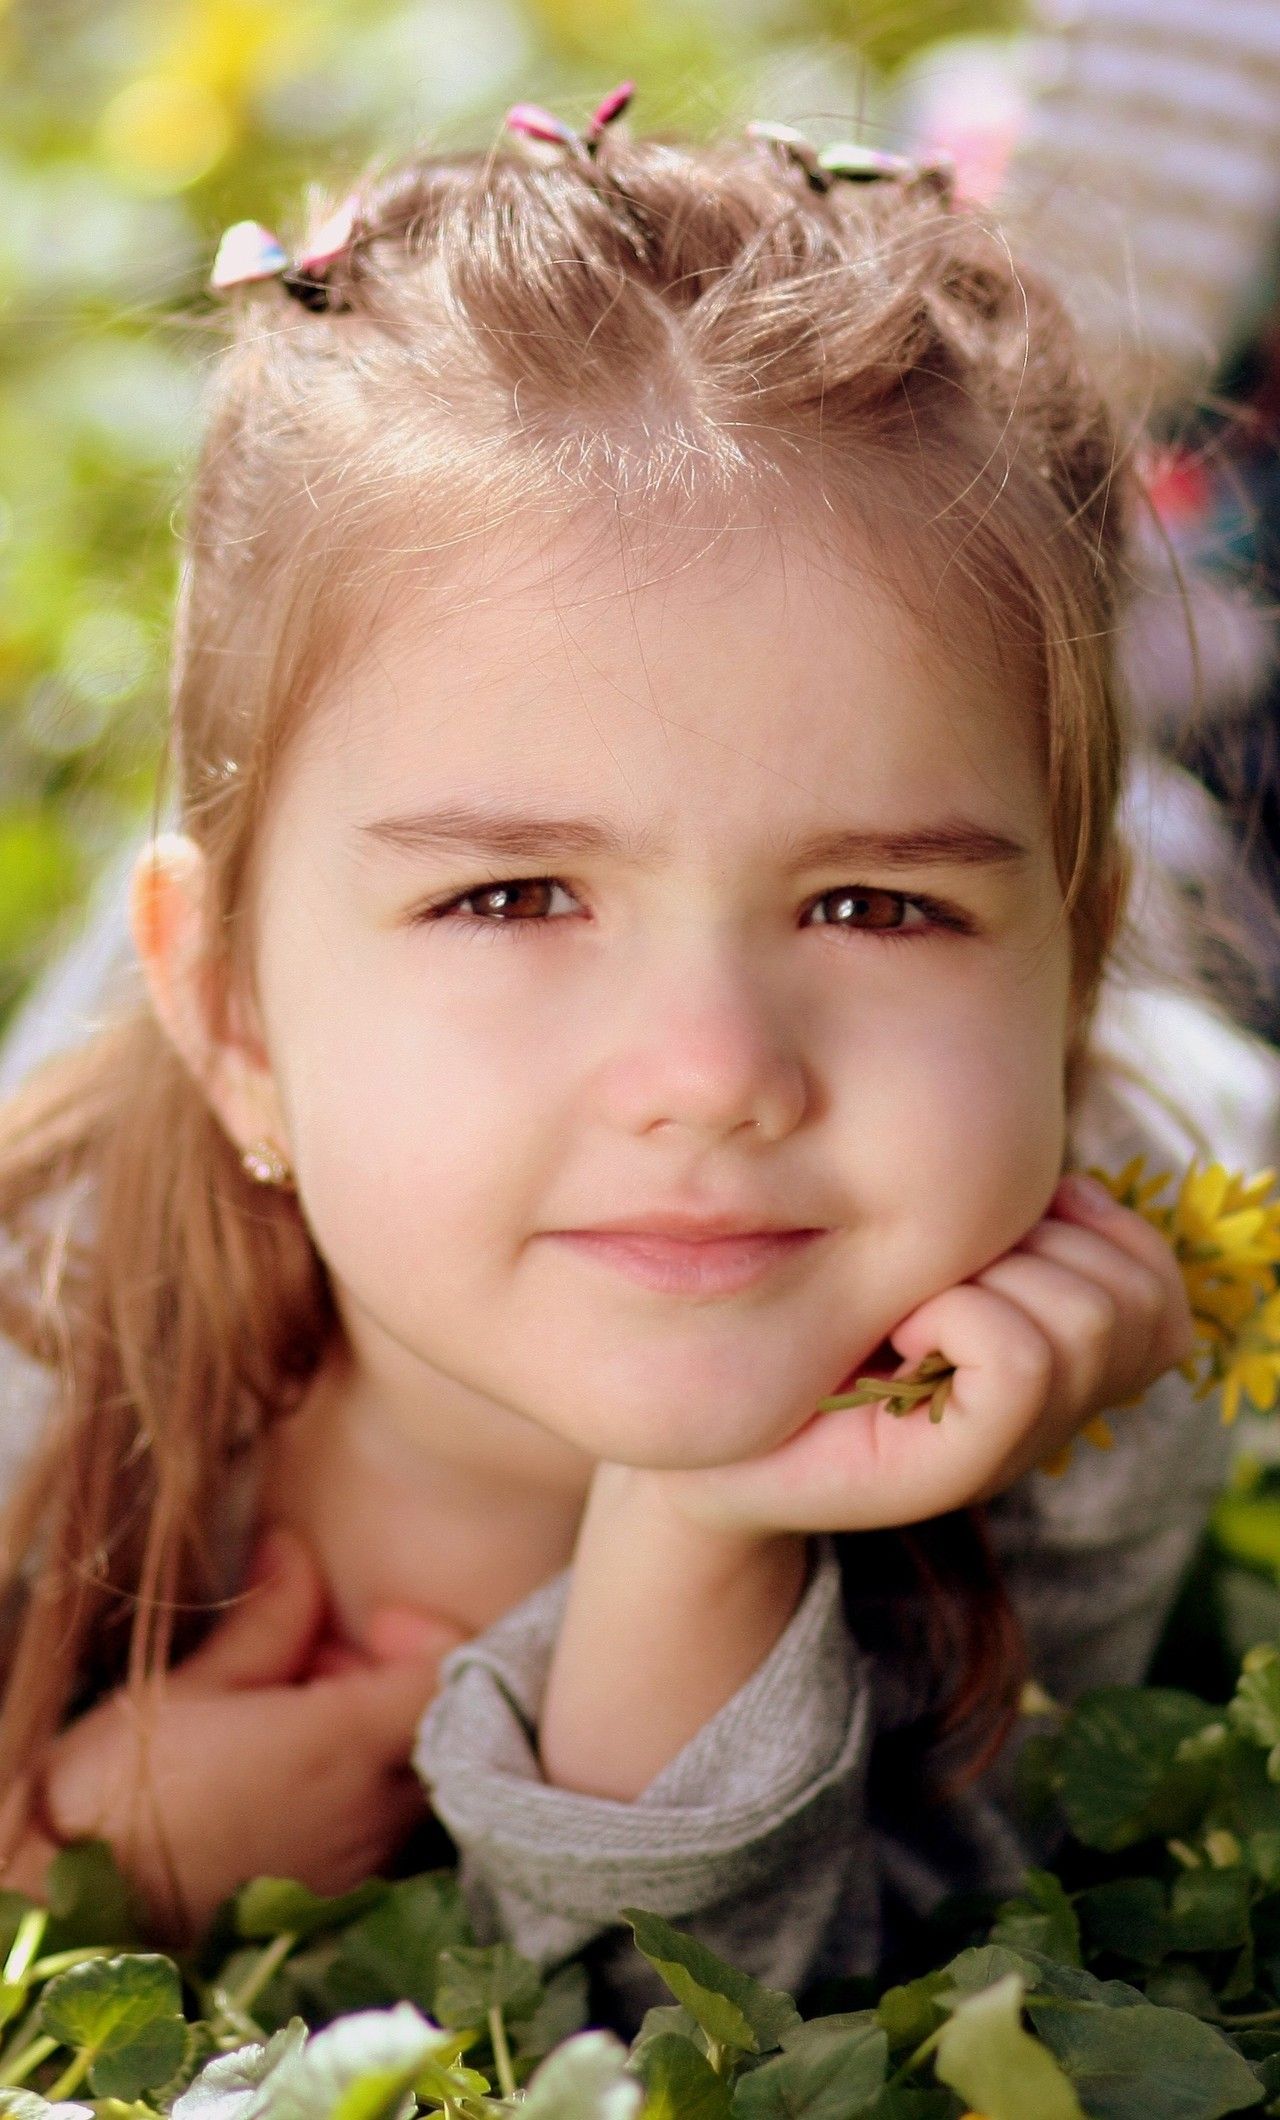 Cute Kid Girl Toddler iPhone HD 4k Wallpaper, Image